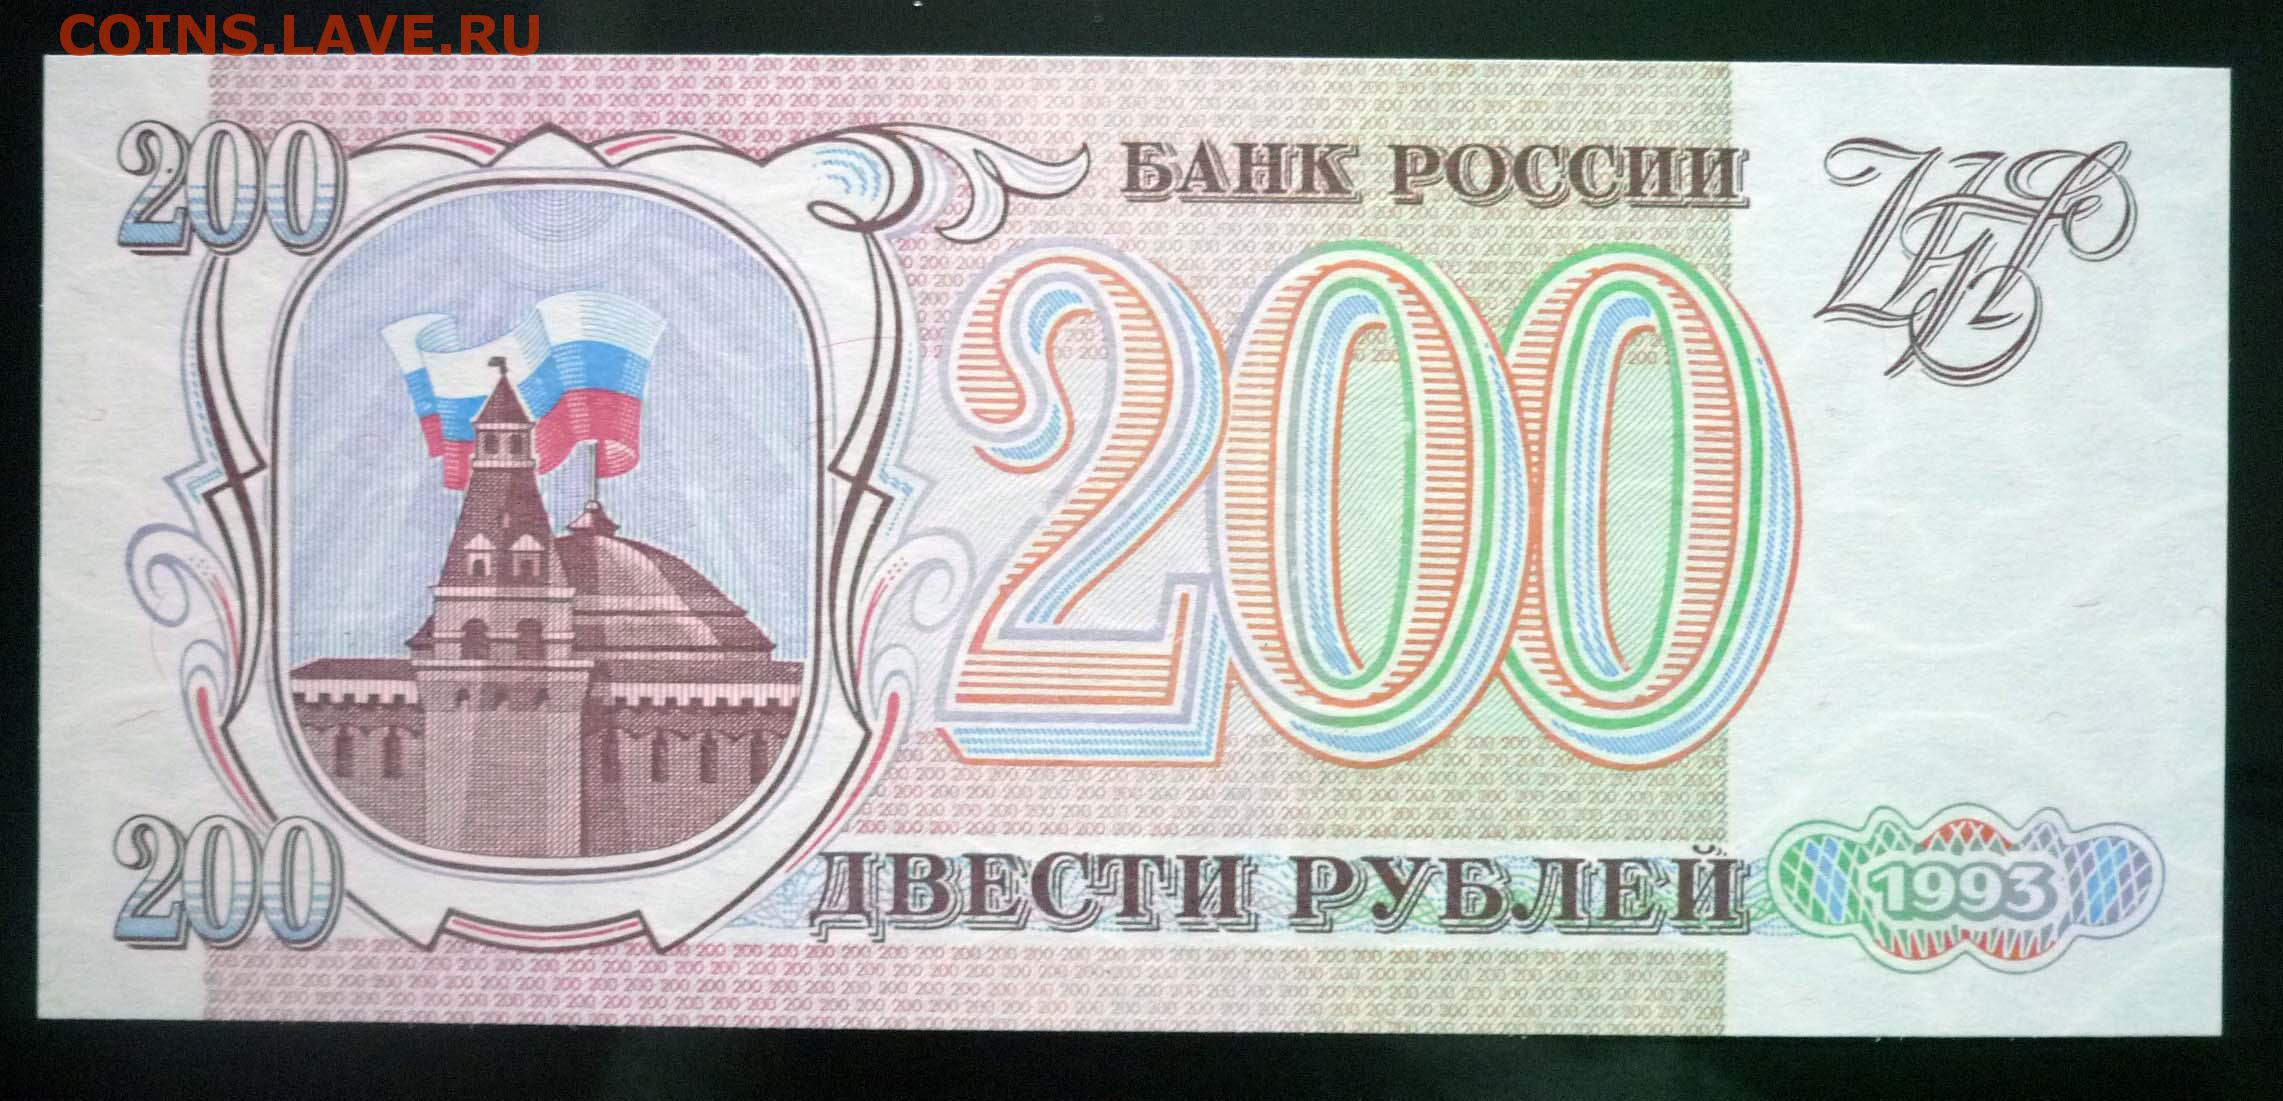 14 200 в рублях. 200 Рублей 1993. Купюра 200 рублей 1993. Банкнота 200 рублей 1993. Двести рублей купюра 1993.